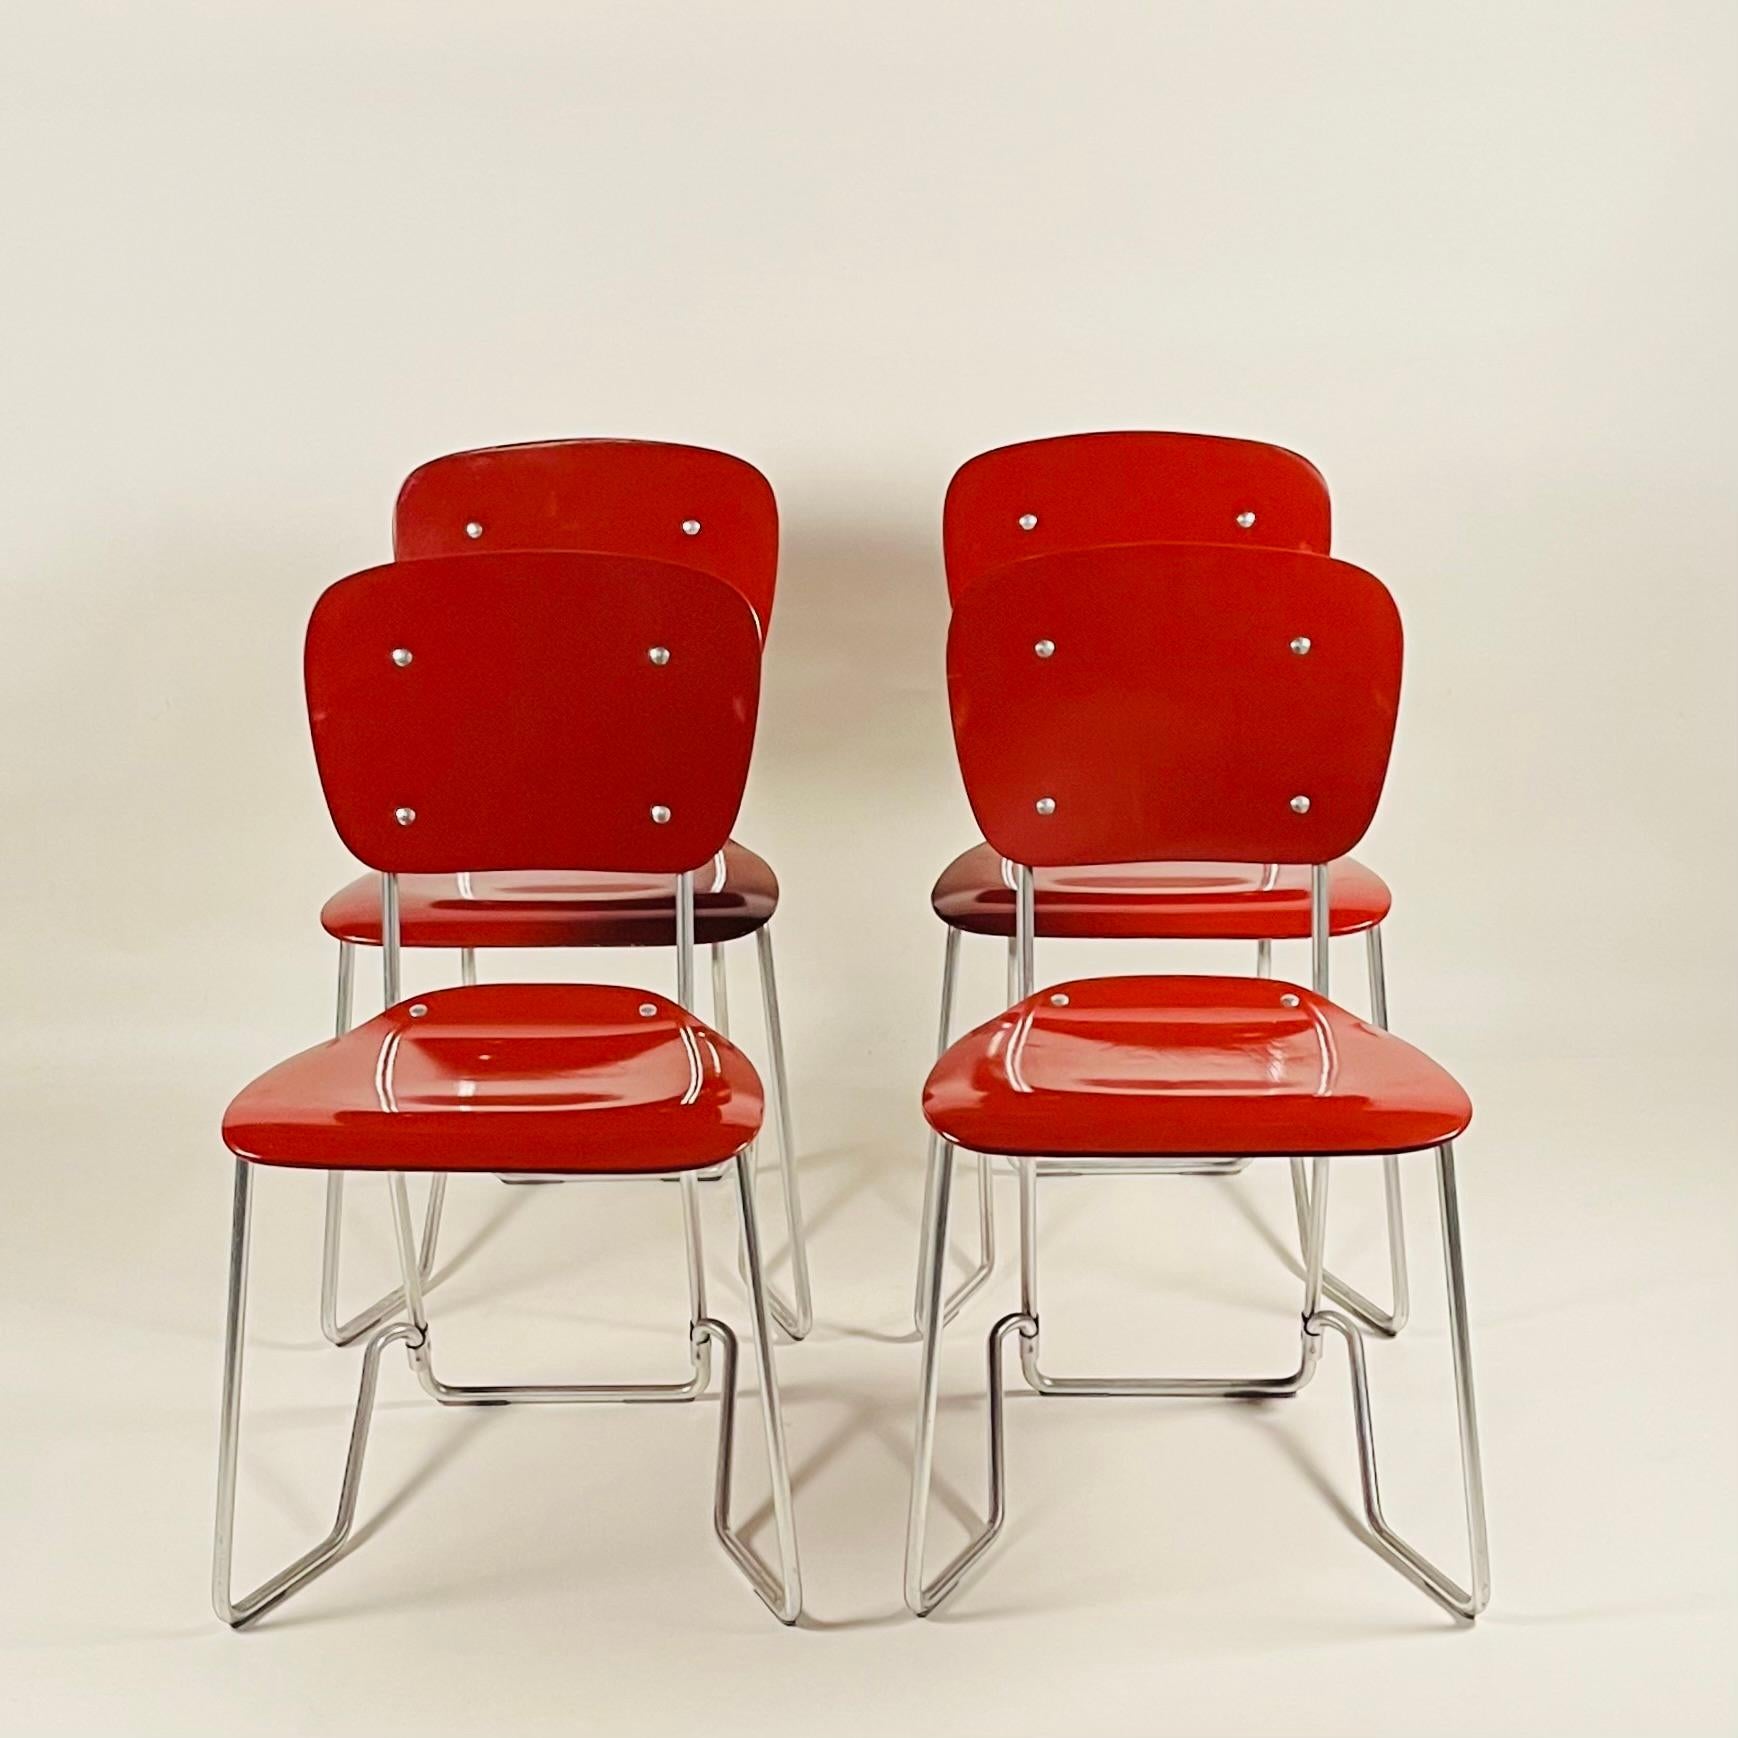 Stapelbare Aluflex-Stühle, entworfen von Armin Wirth.
Hergestellt von Aluflex, Schweiz, um 1950.
